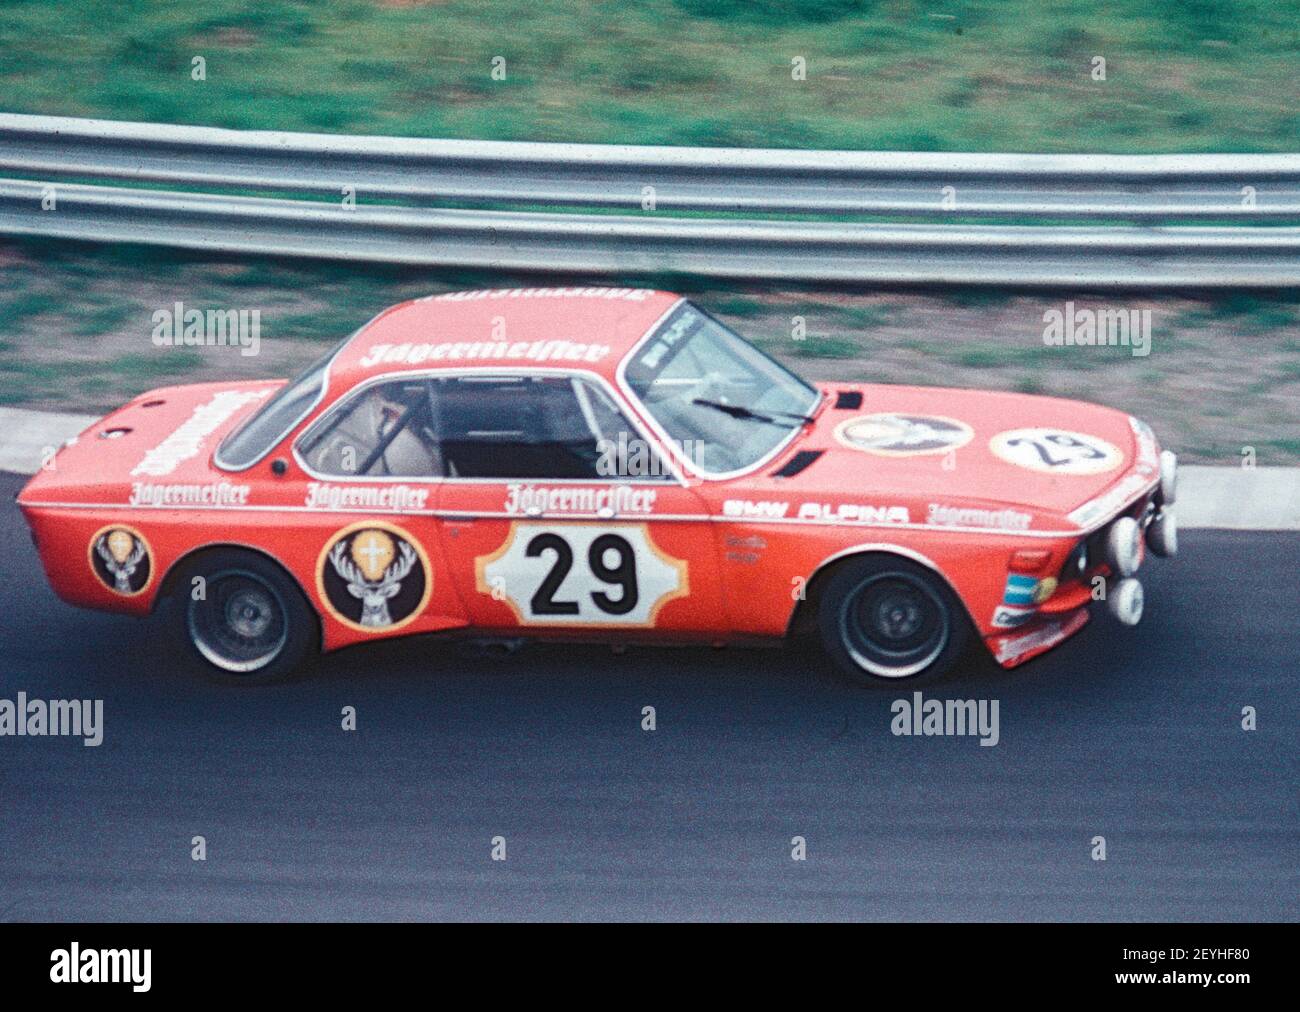 Une BMW Alpina 3.0 CSL lors d'une course de voitures de tourisme au Nuerburgring Nordschleife dans les années 1970, Eifel Allemagne Banque D'Images